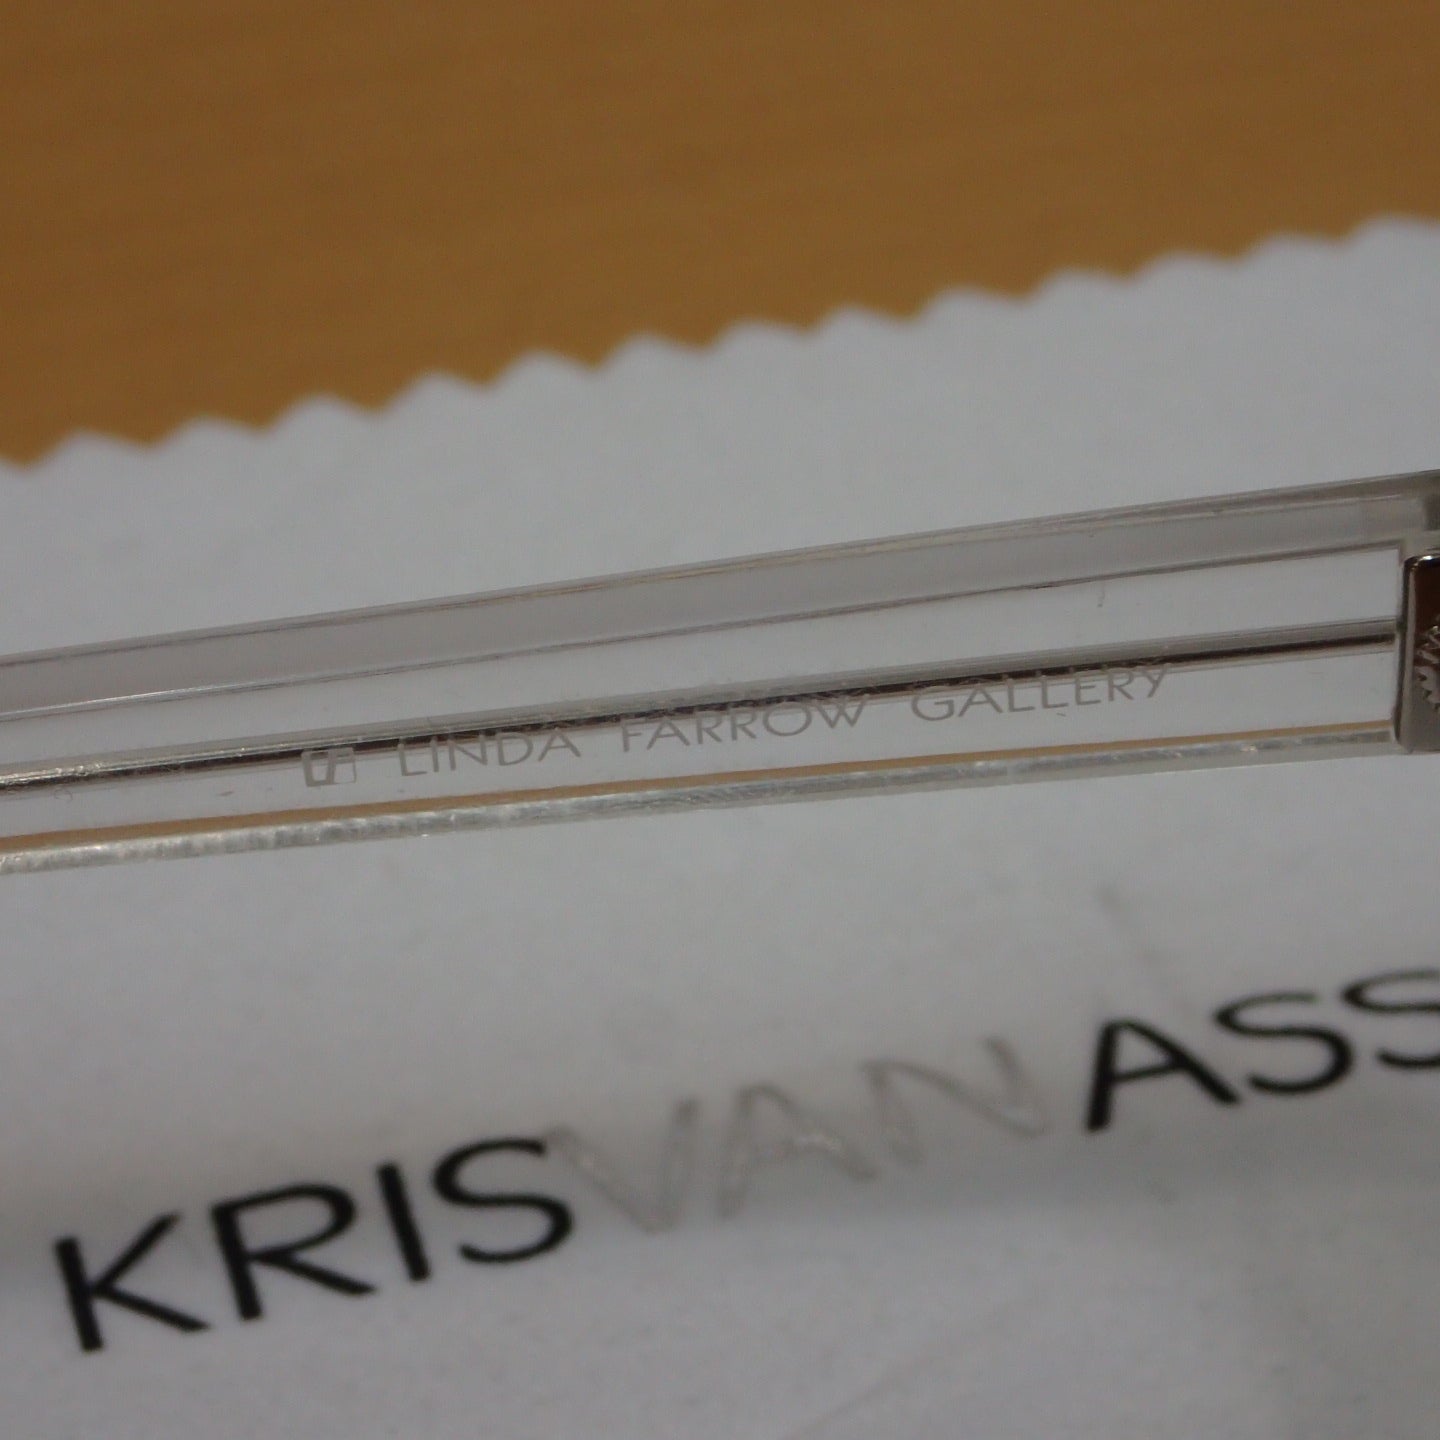 Kris Van Assche by LINDA FARROW Sunglasses